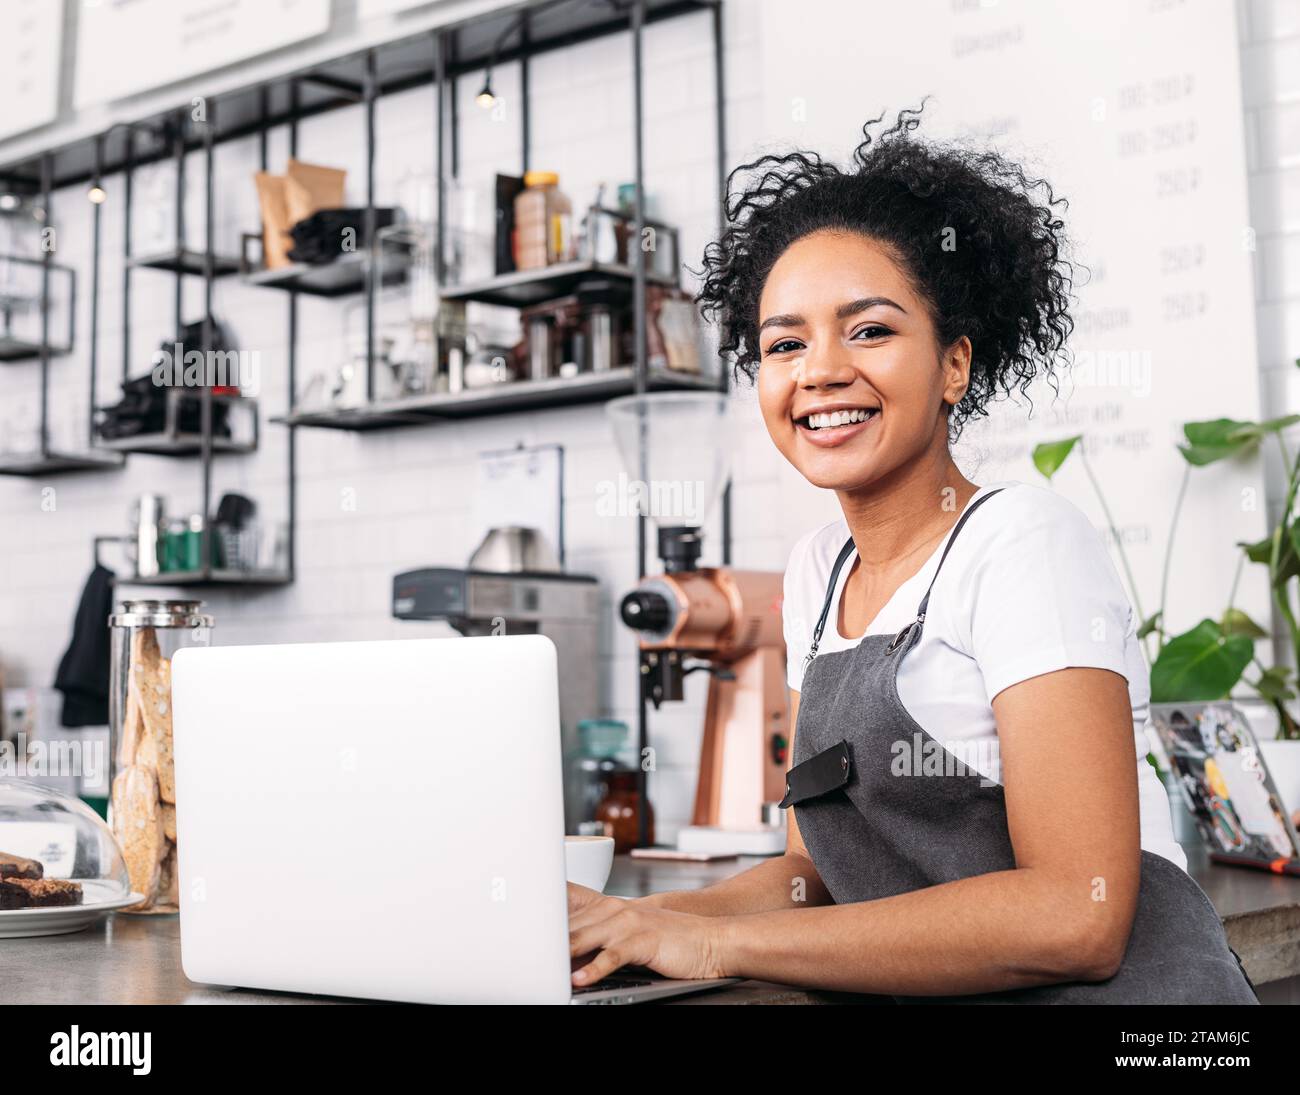 Lächelnder Coffee-Shop-Besitzer mit lockigem Haar, der in die Kamera blickt. Frau in einer Schürze mit einem Laptop an der Theke. Stockfoto